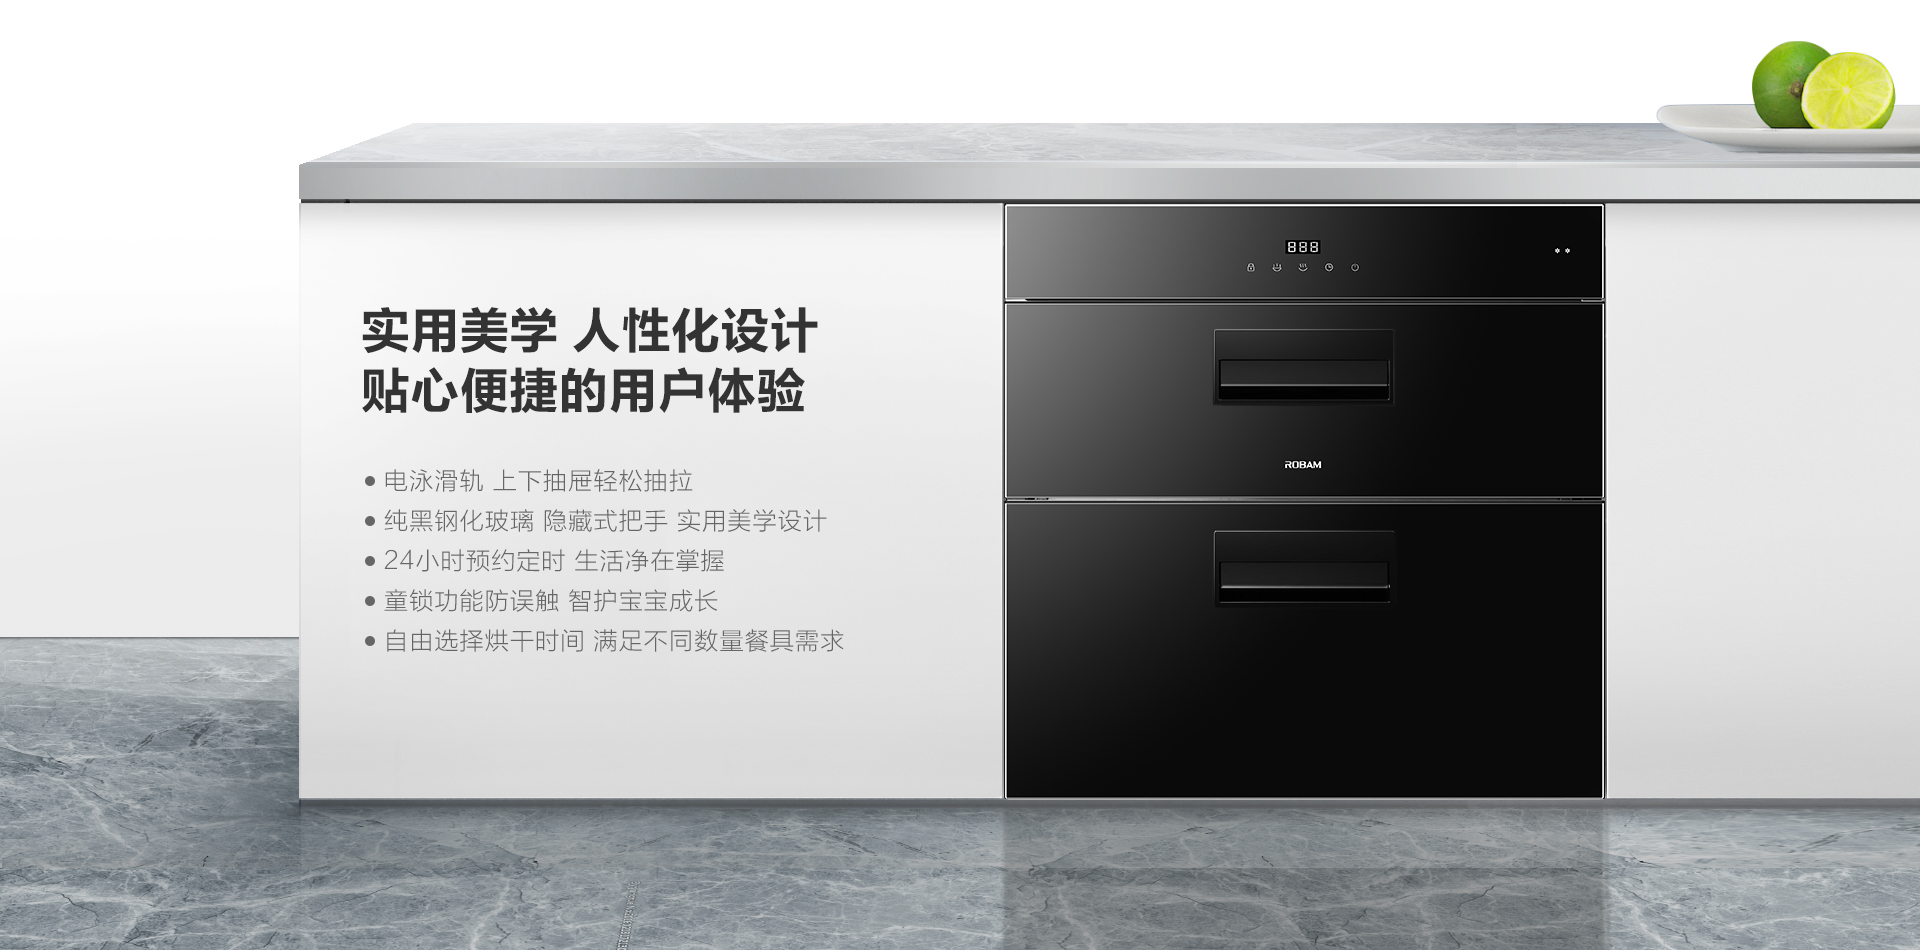 XB606消毒柜-上新-PC端-210719_05.png